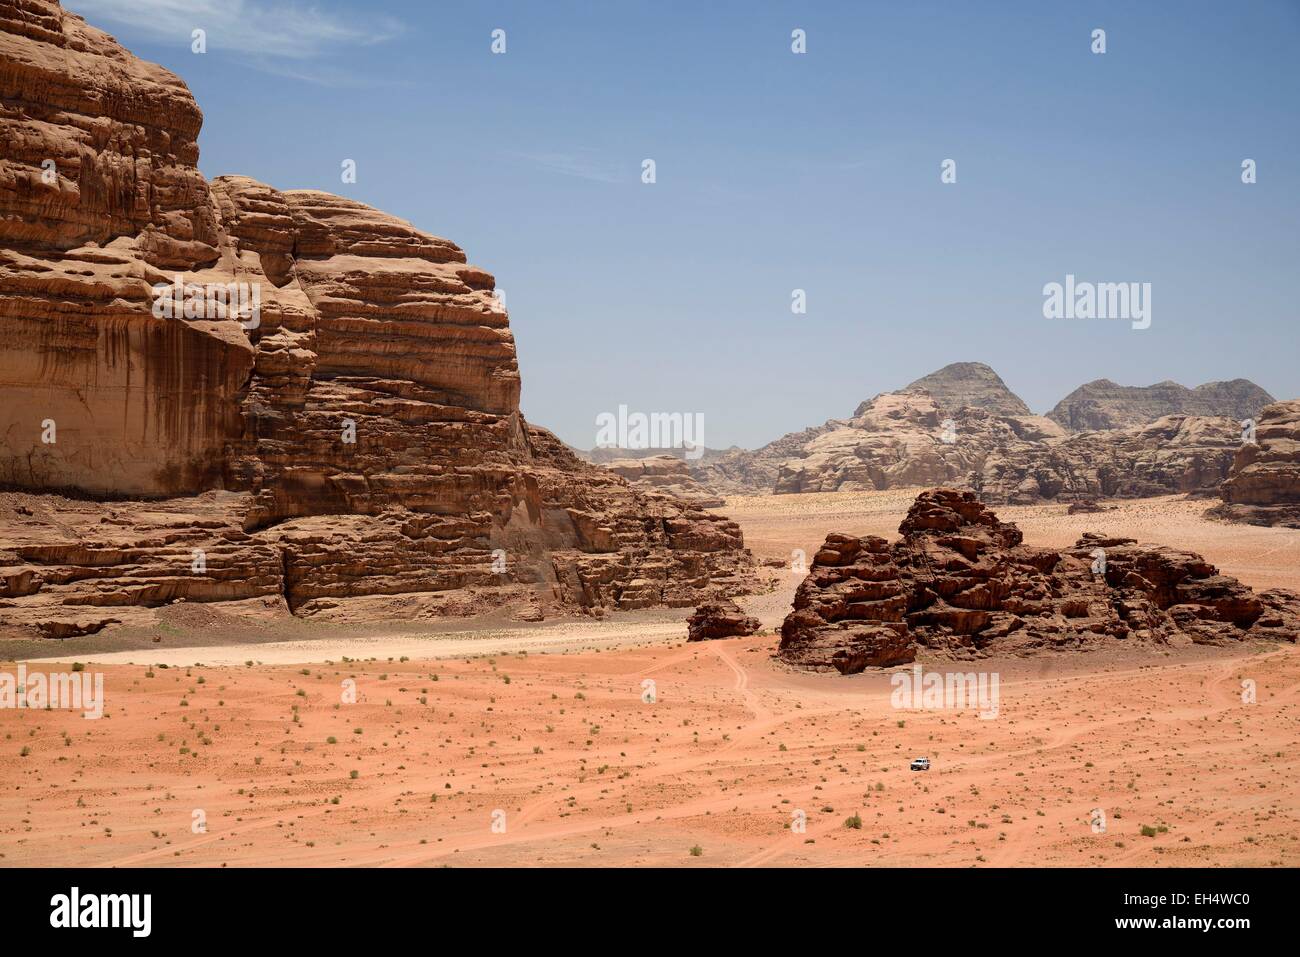 Jordania, Wadi Rum desert, espacio protegido catalogado como Patrimonio de la Humanidad por la UNESCO, el desierto de arena y rocas, vista desde el Lawrence's house (Al-Qsair) Foto de stock